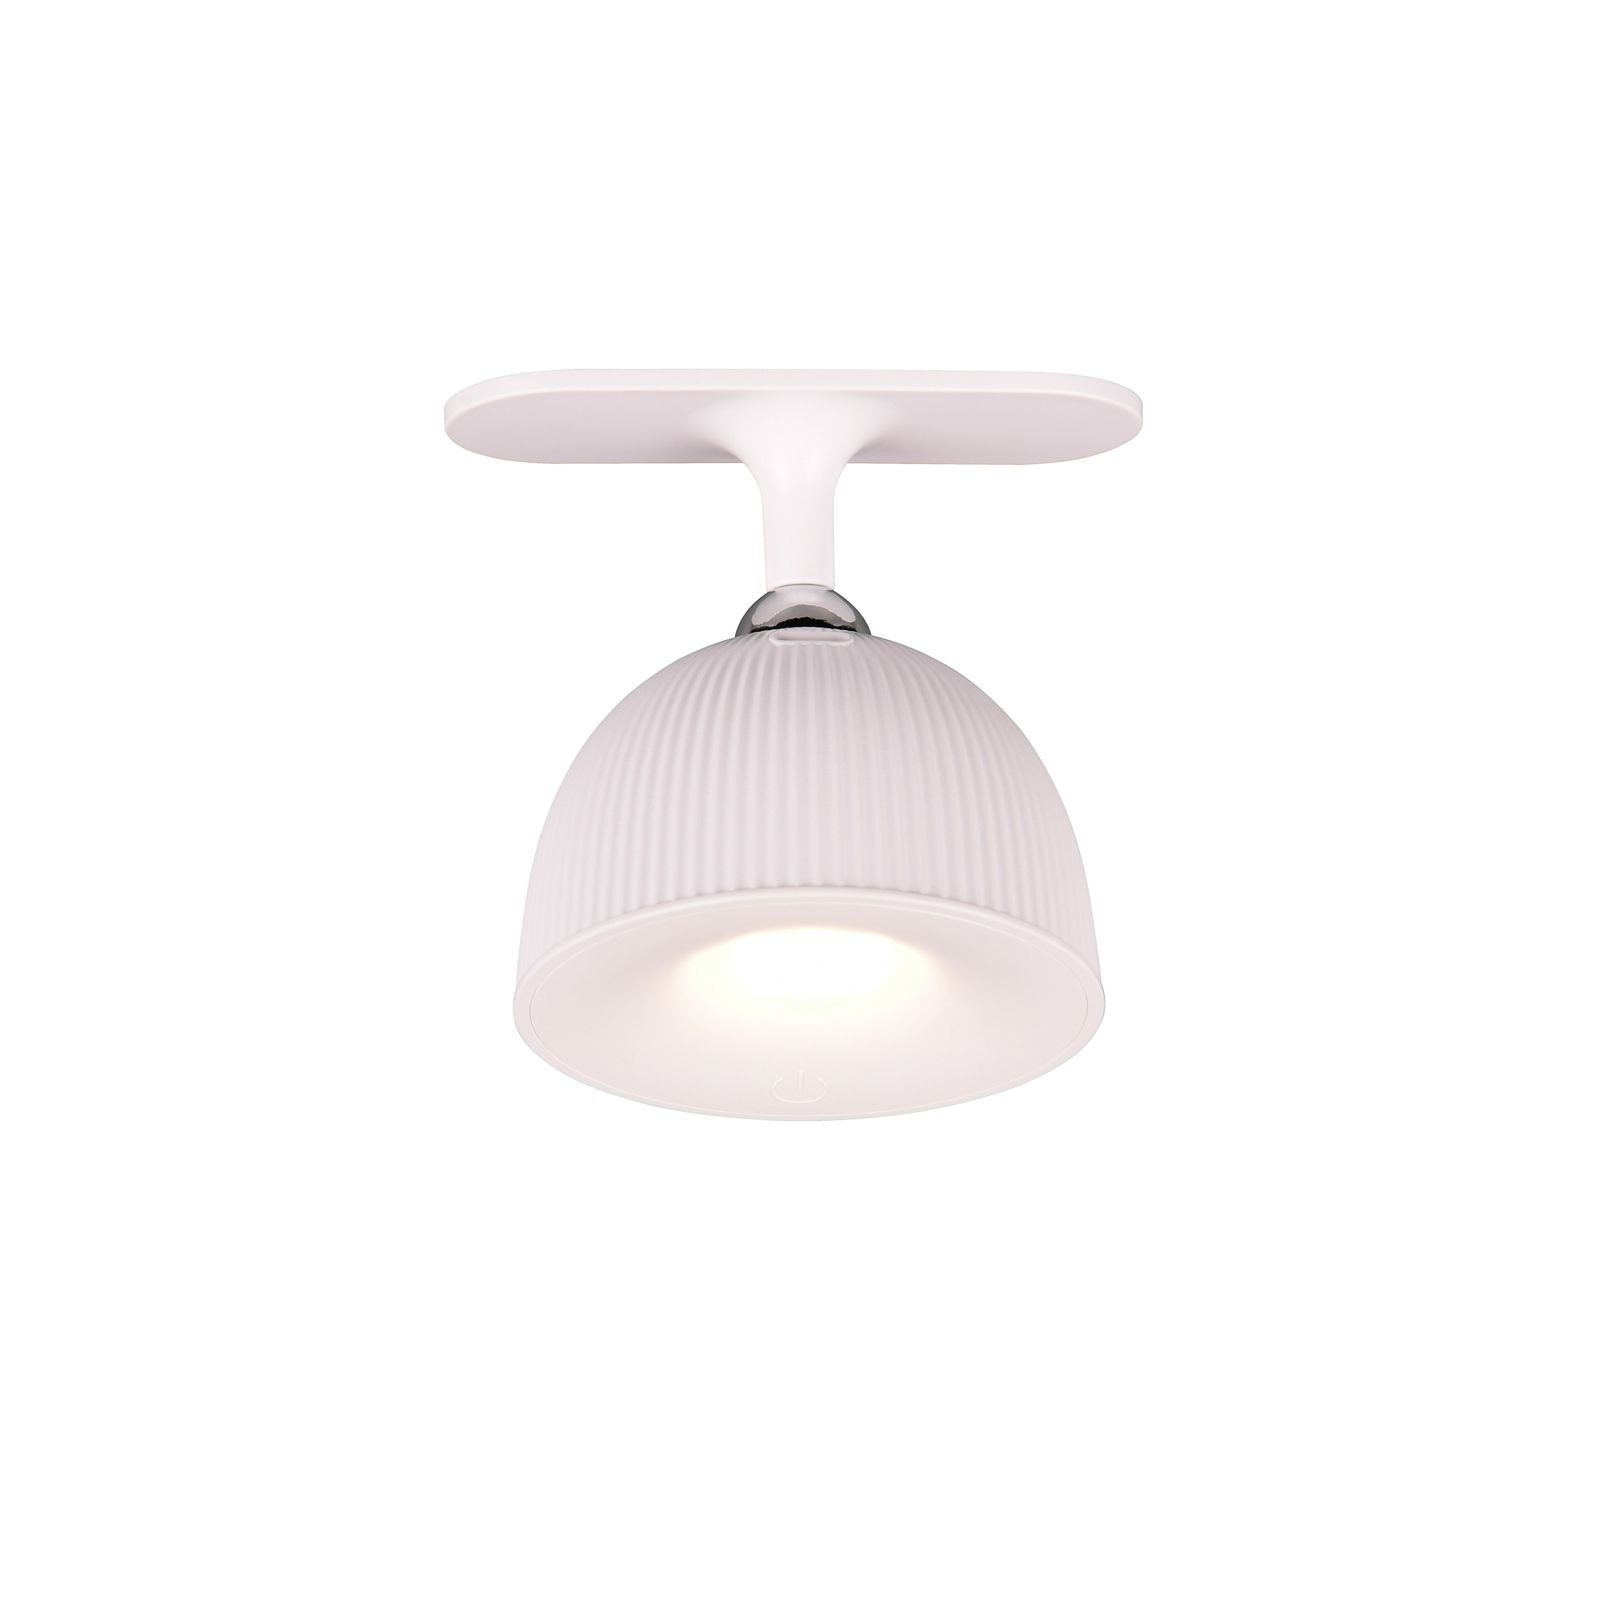 Maxima LED genopladelig bordlampe, hvid, højde 41 cm, plast